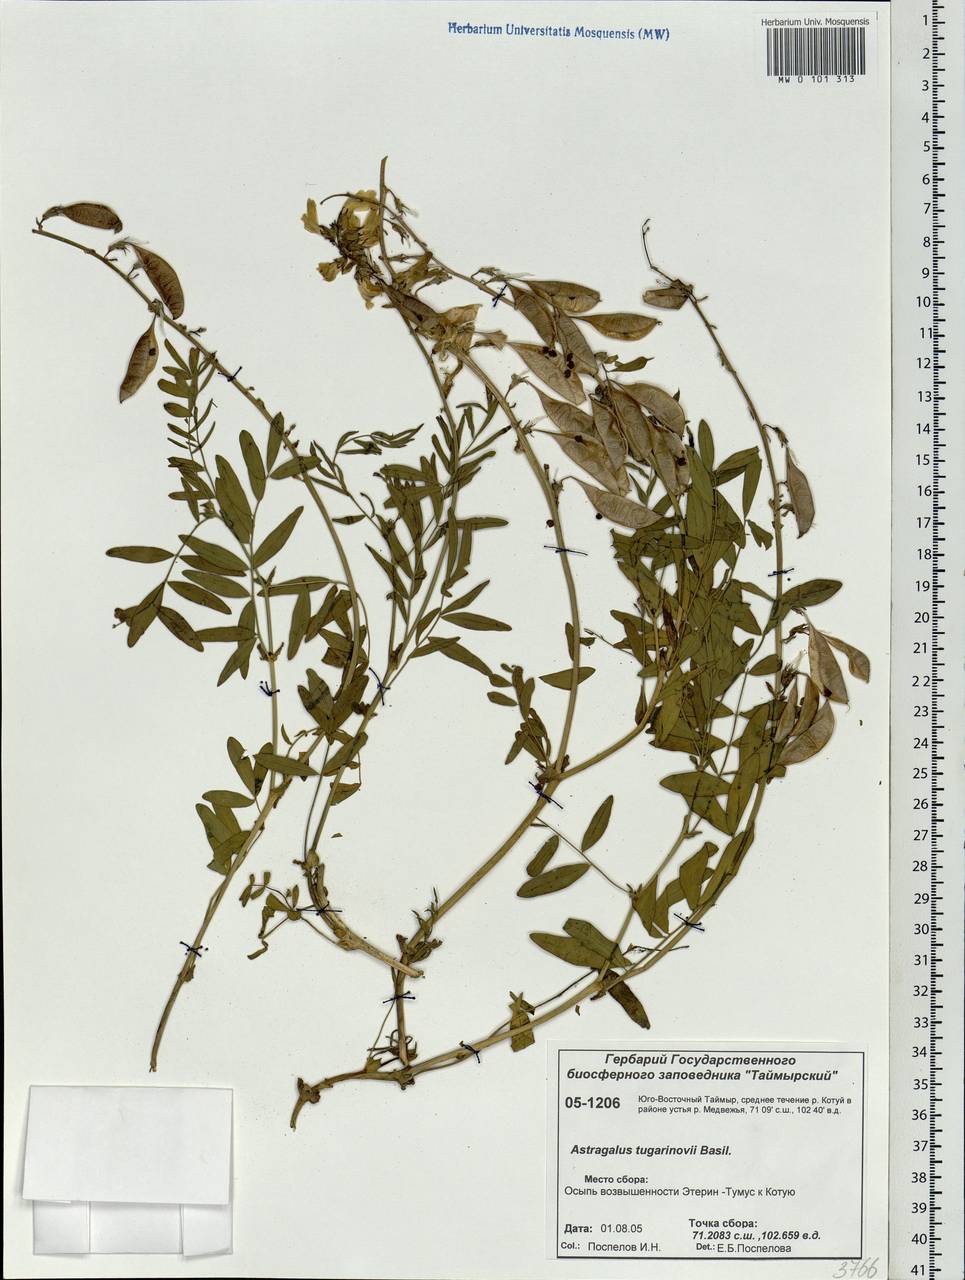 Astragalus tugarinovii Basil., Siberia, Central Siberia (S3) (Russia)